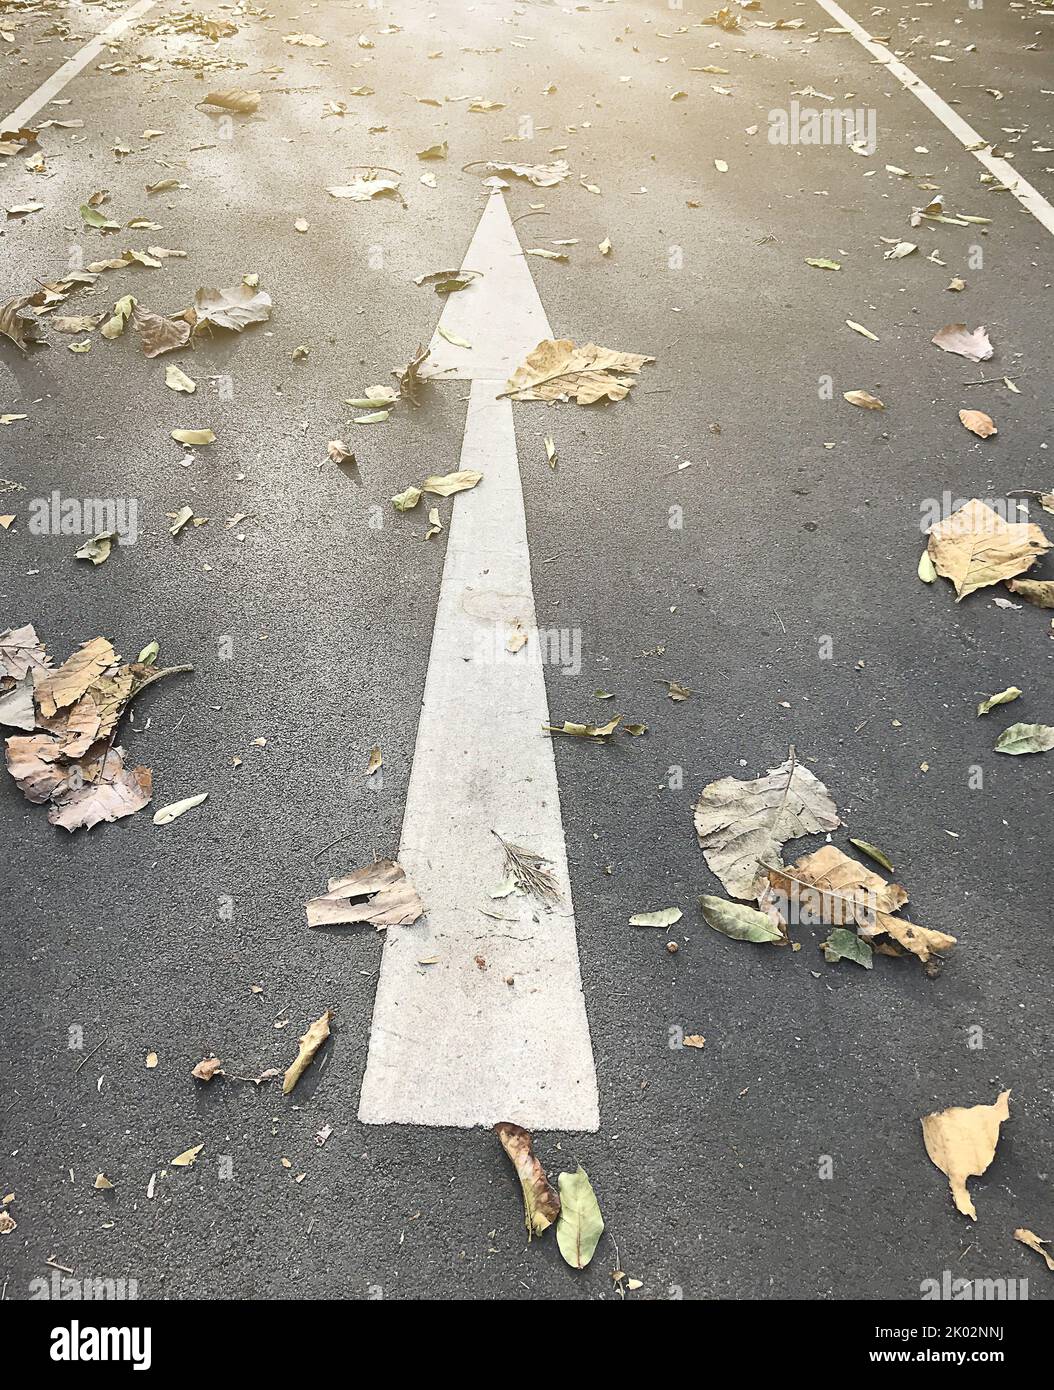 Der gerade Pfeil auf der Straße, der das Konzept für die Zukunft darstellt, auch wenn es Hindernisse gibt Stockfoto